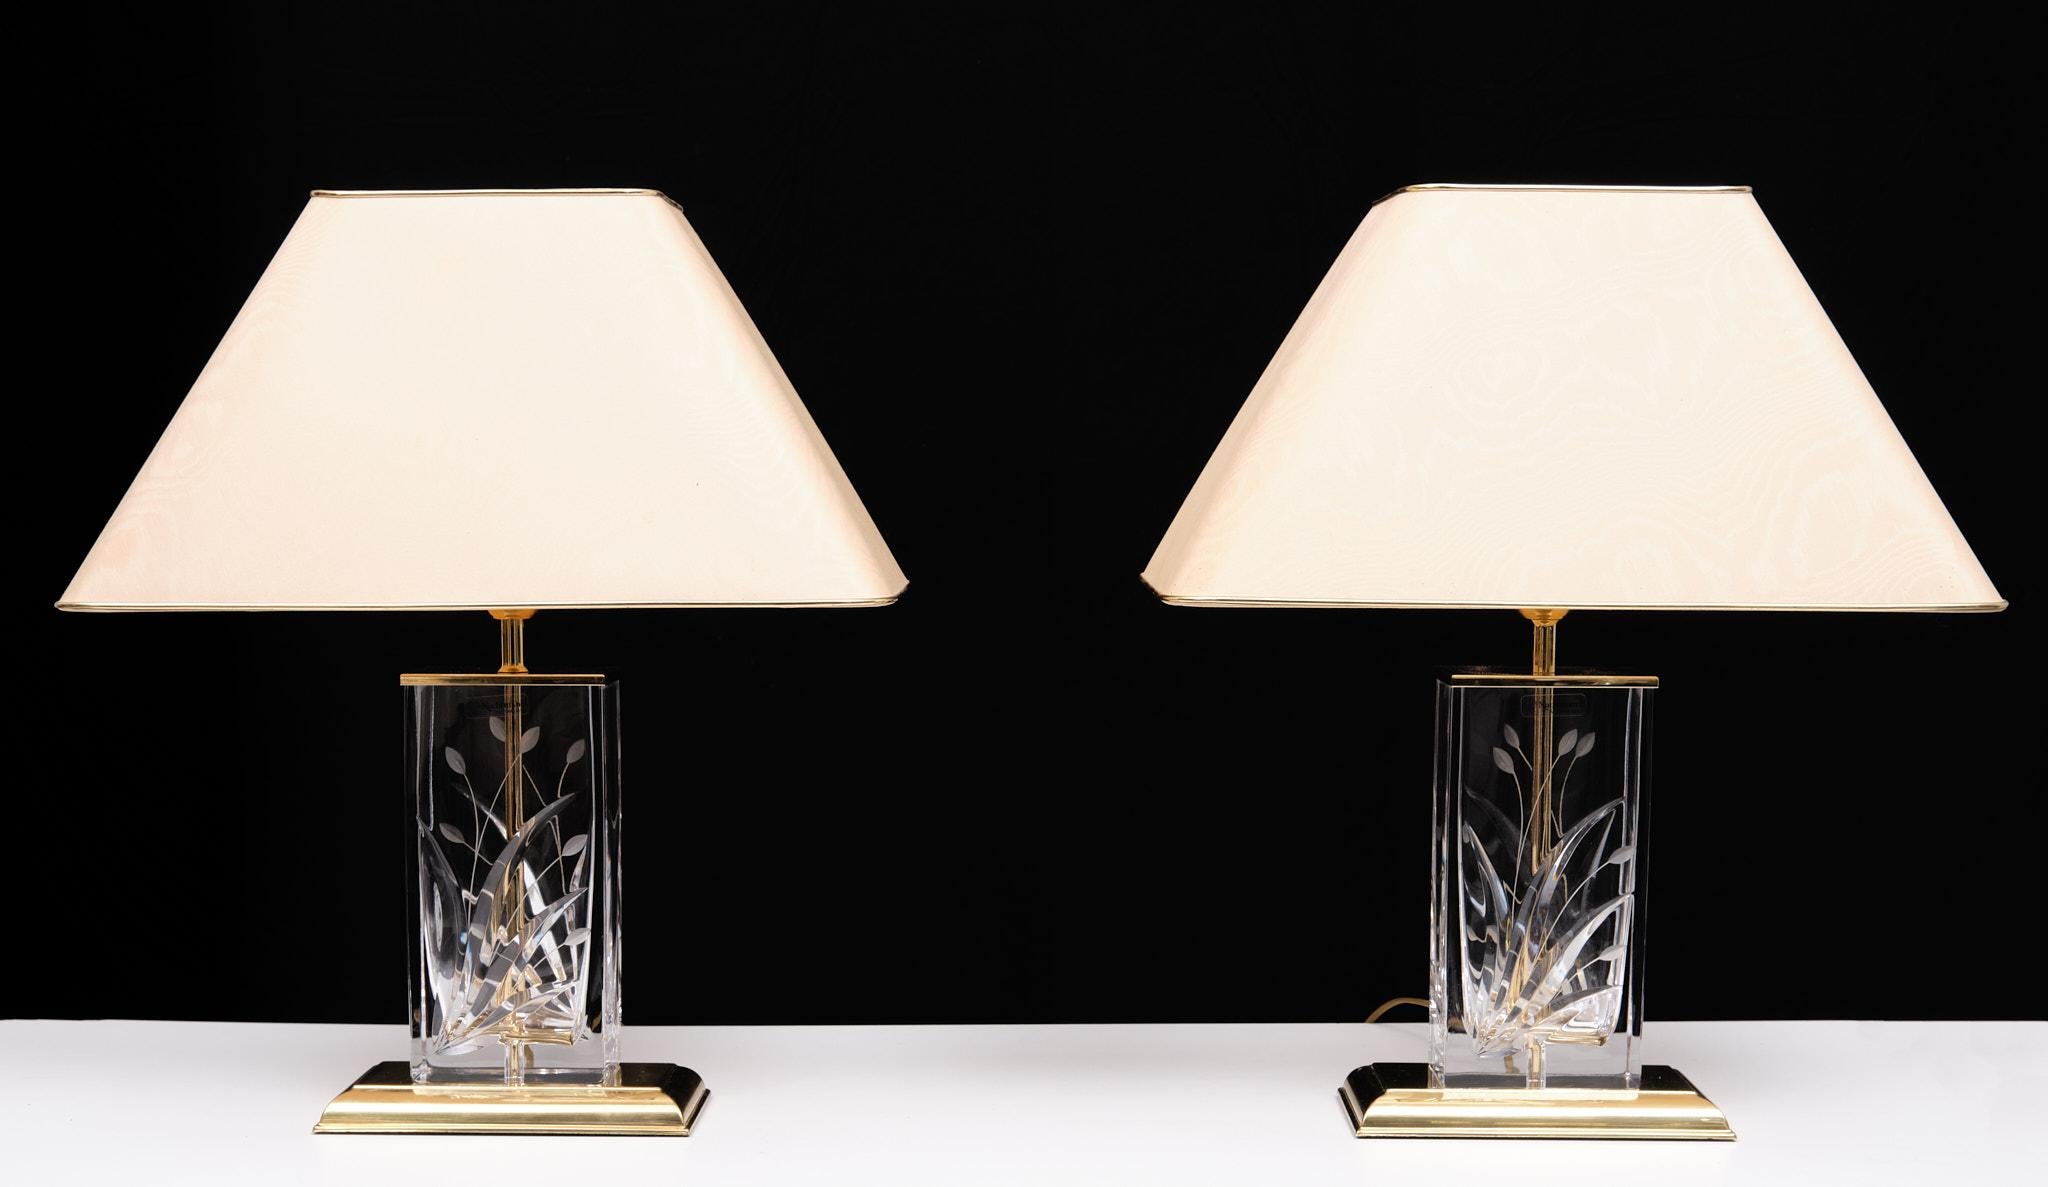 2 Schöne identische Tischlampen von Nachtmann Luechten Deutschland 1970er Jahre . 
Geschliffenes Kristallglas, auf einem Sockel aus Messing. Kommt mit den originalen Schirmen. 
Guter Vintage-Zustand. 